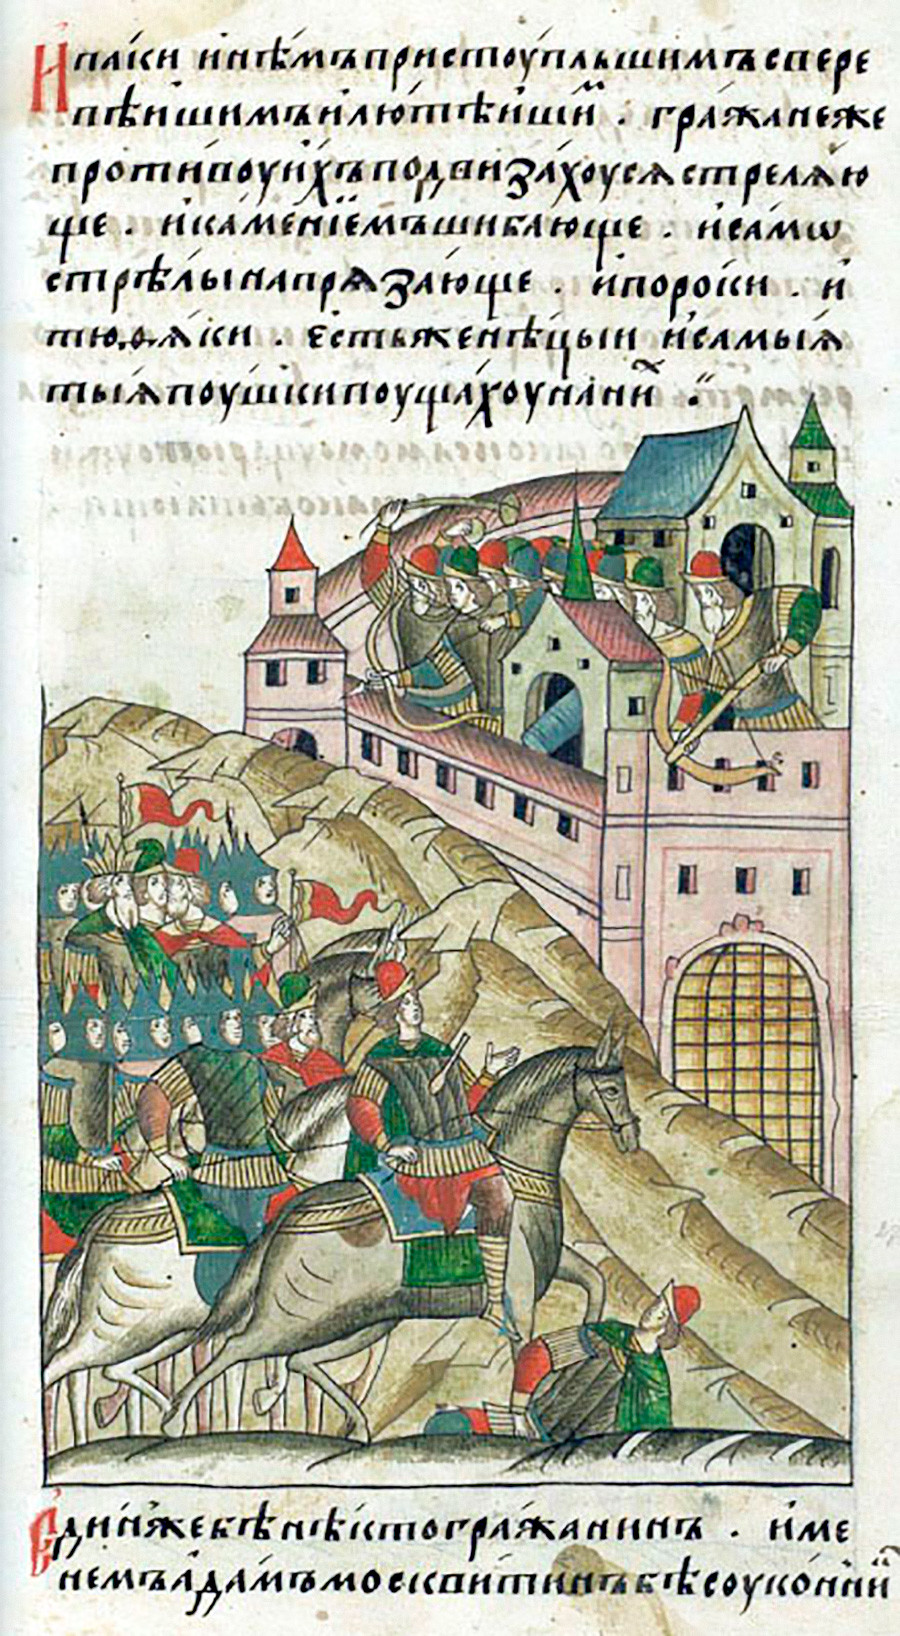 Pengepungan Khan Tokhtamysh atas Moskow, 1382. Ilustrasi kronik abad ke-16. Sebuah senjata benteng tergambarkan di menara tengah tembok pertahanan kota.